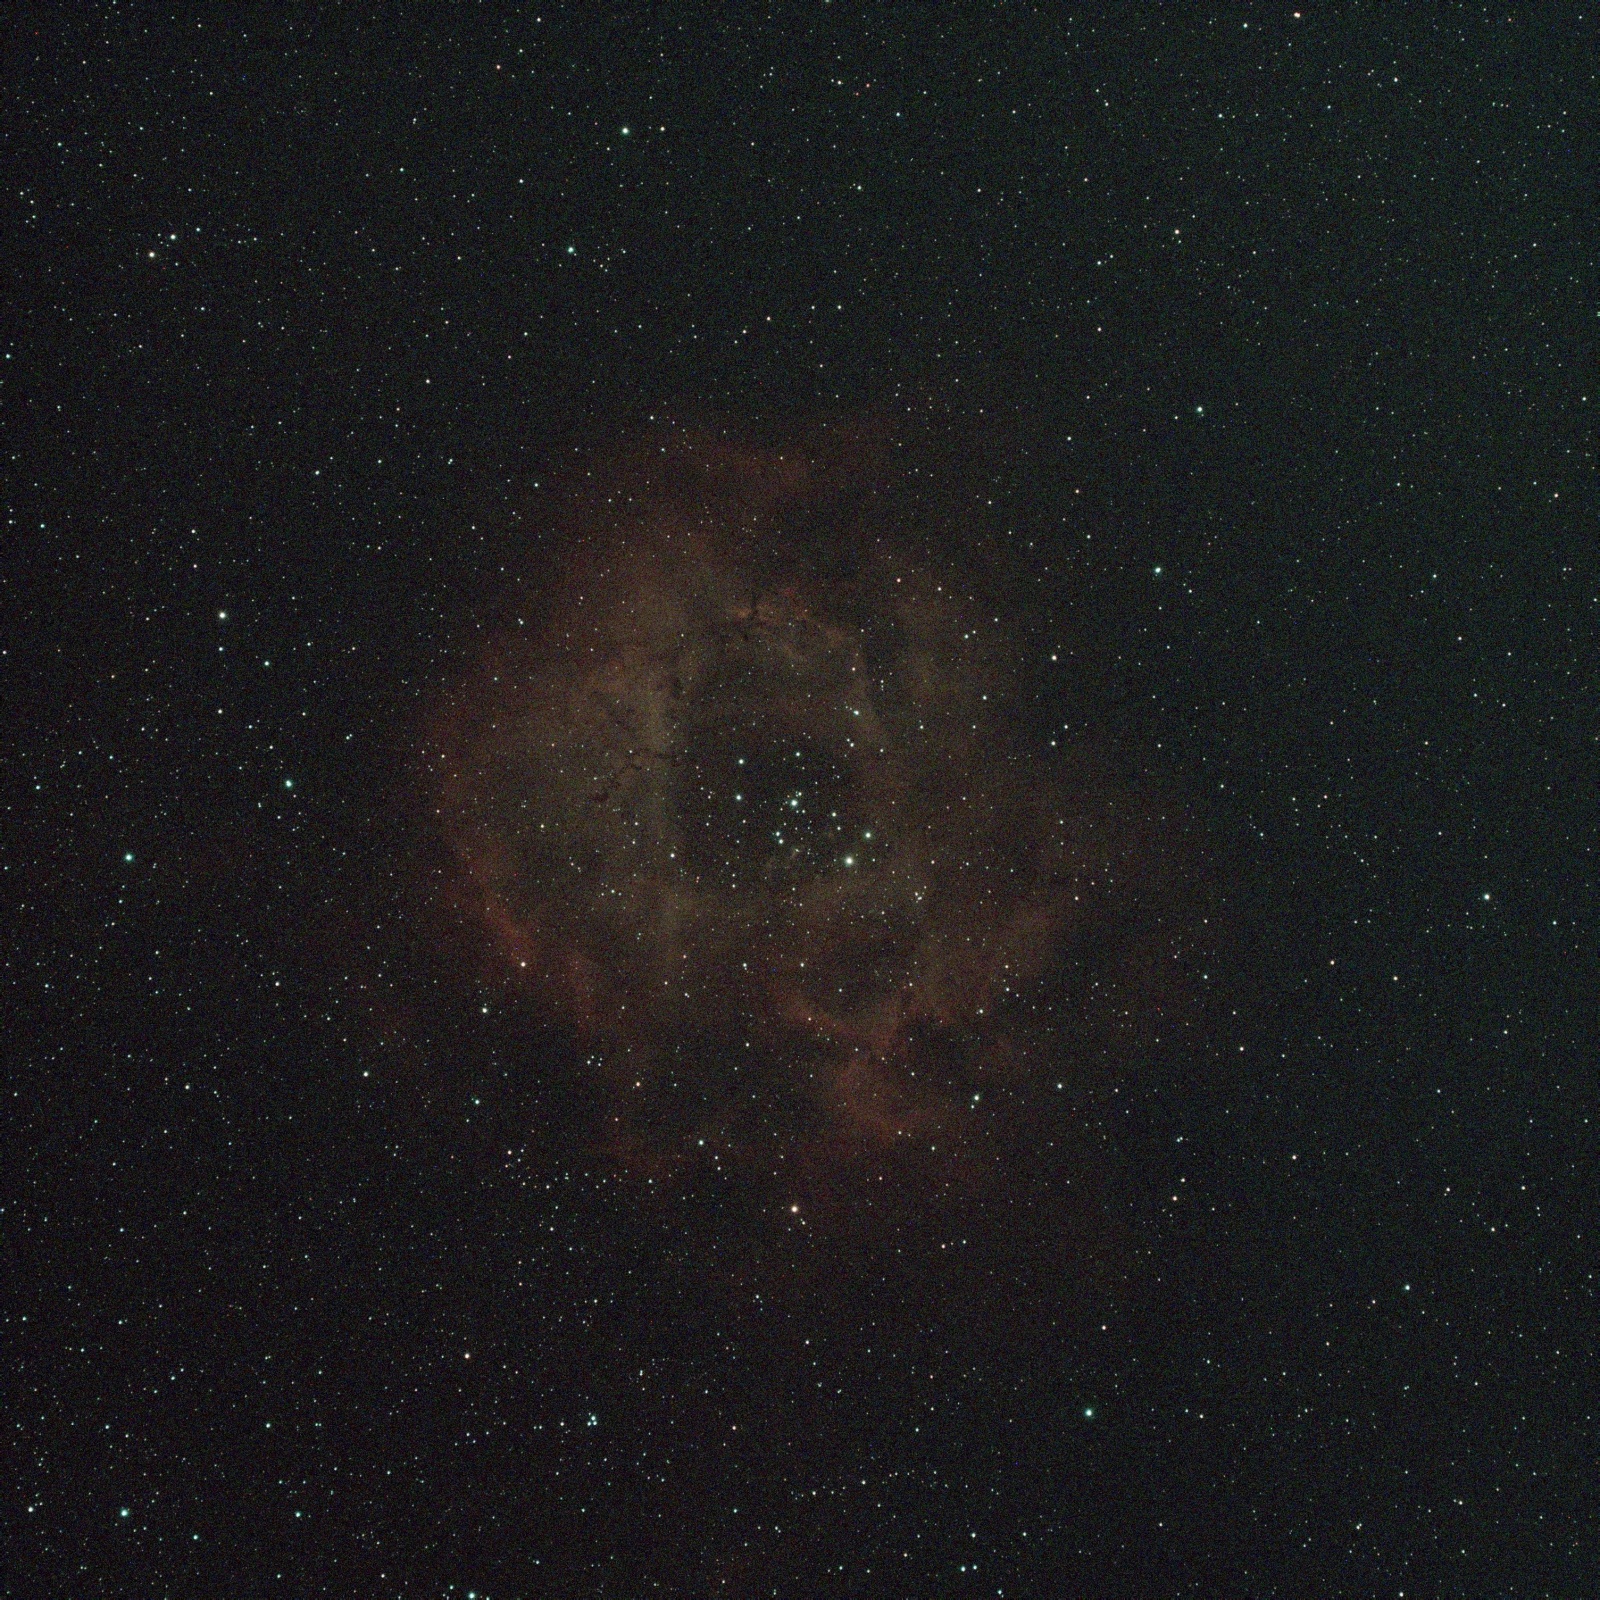 NGC_2244_Light_120_secs_002_d.thumb.jpg.57d94a5613a1fa545671a6ce7bf22eab.jpg